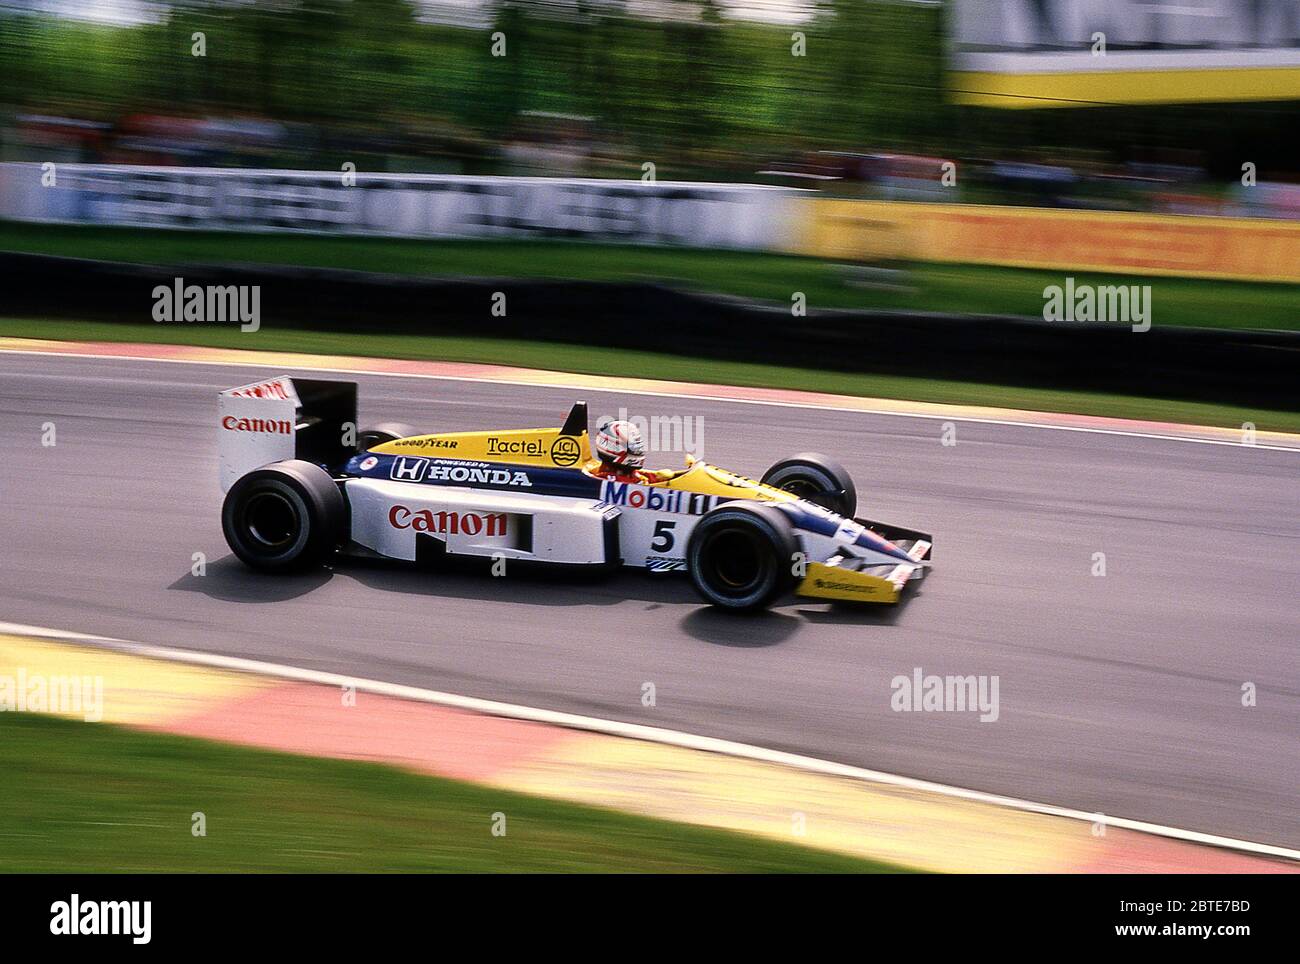 Nigel Mansell nella sua vettura Williams F1 al Gran Premio di Gran Bretagna 1986 a Brands Hatch UK Foto Stock